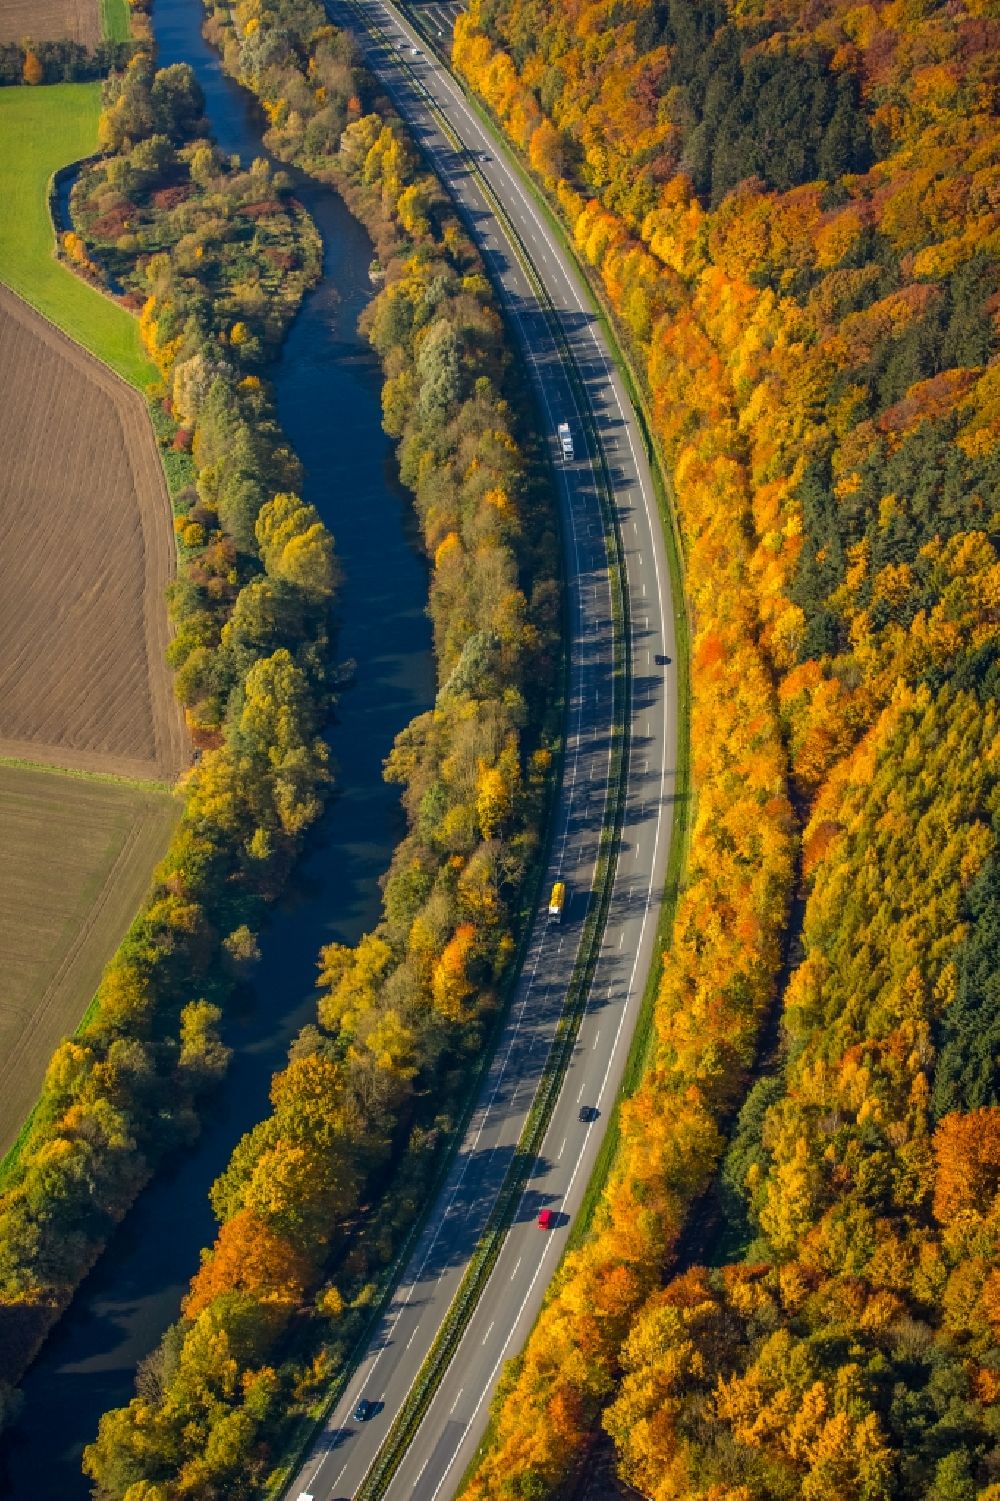 Neheim von oben - Autobahn- Streckenverlauf der A445 am Ufer der Ruhr in Neheim im Bundesland Nordrhein-Westfalen